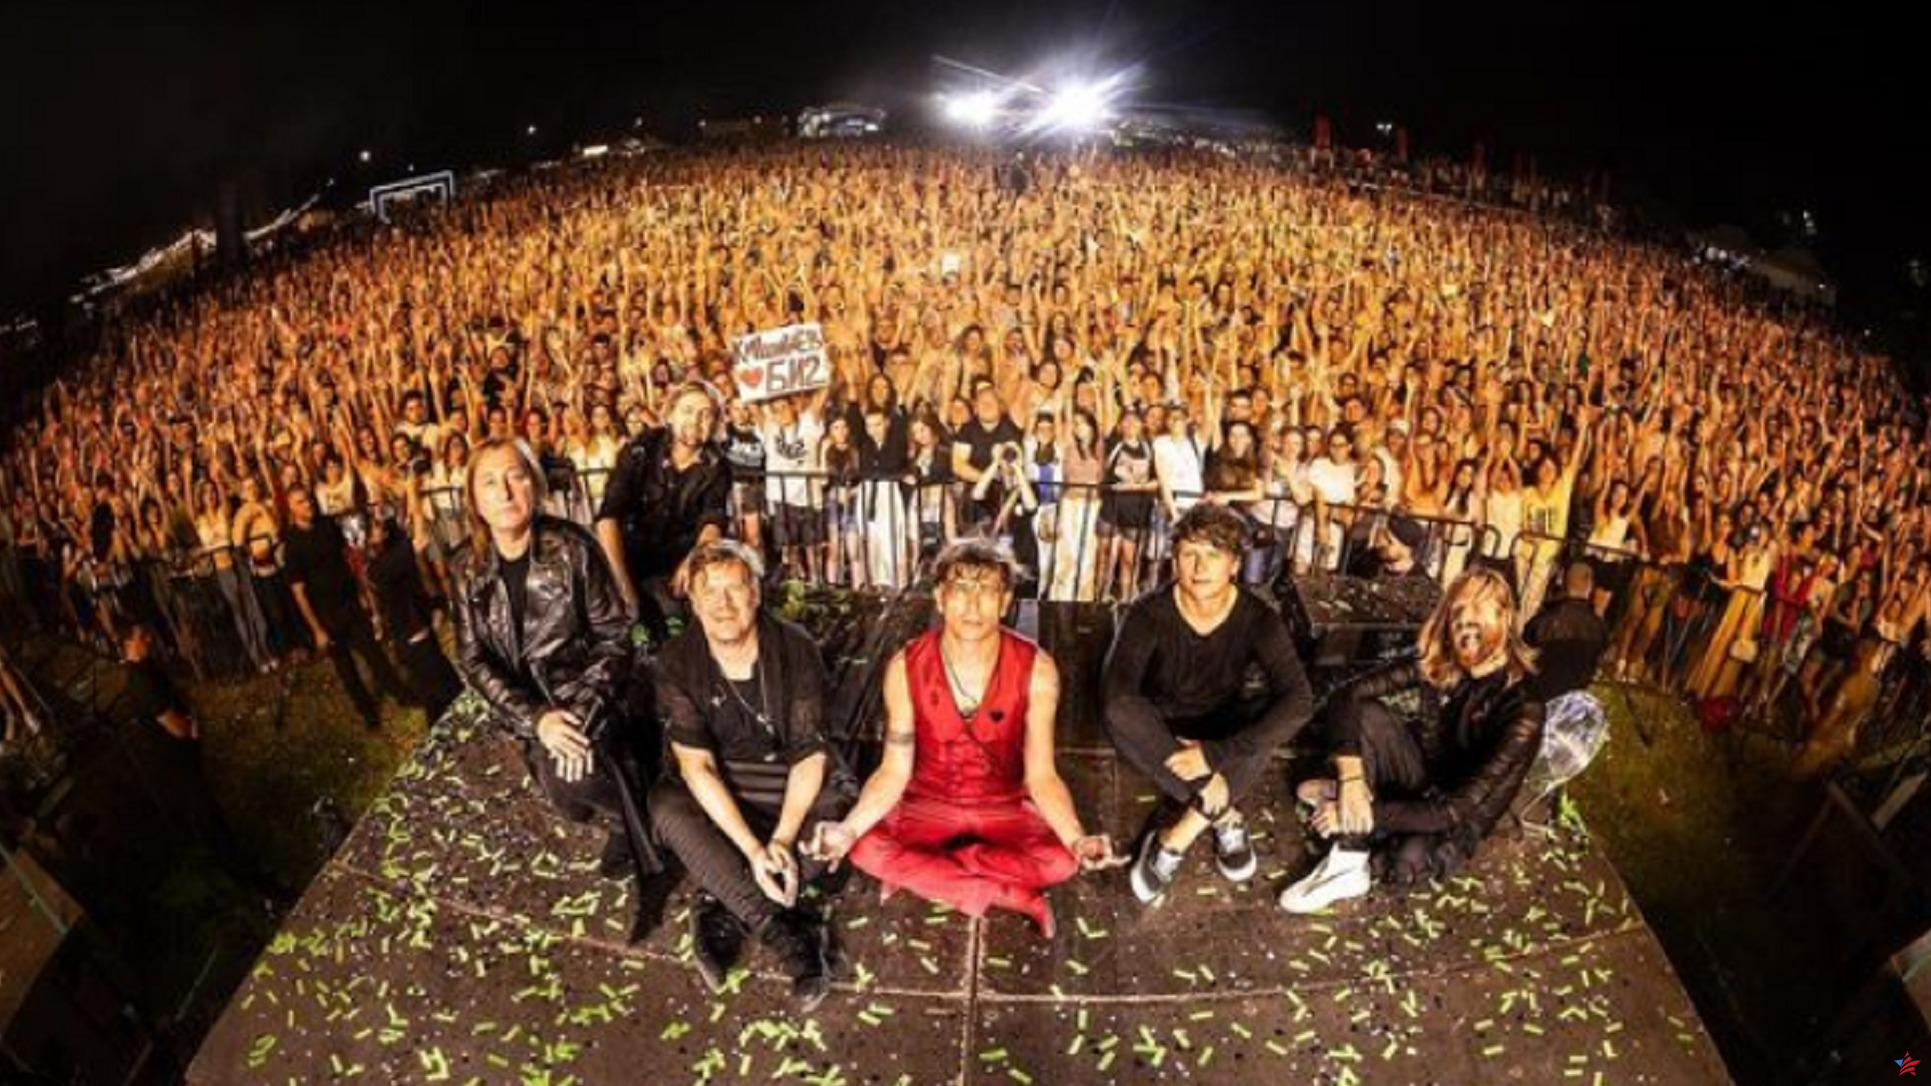 Banda de rock disidente rusa amenazada con deportación en Tailandia